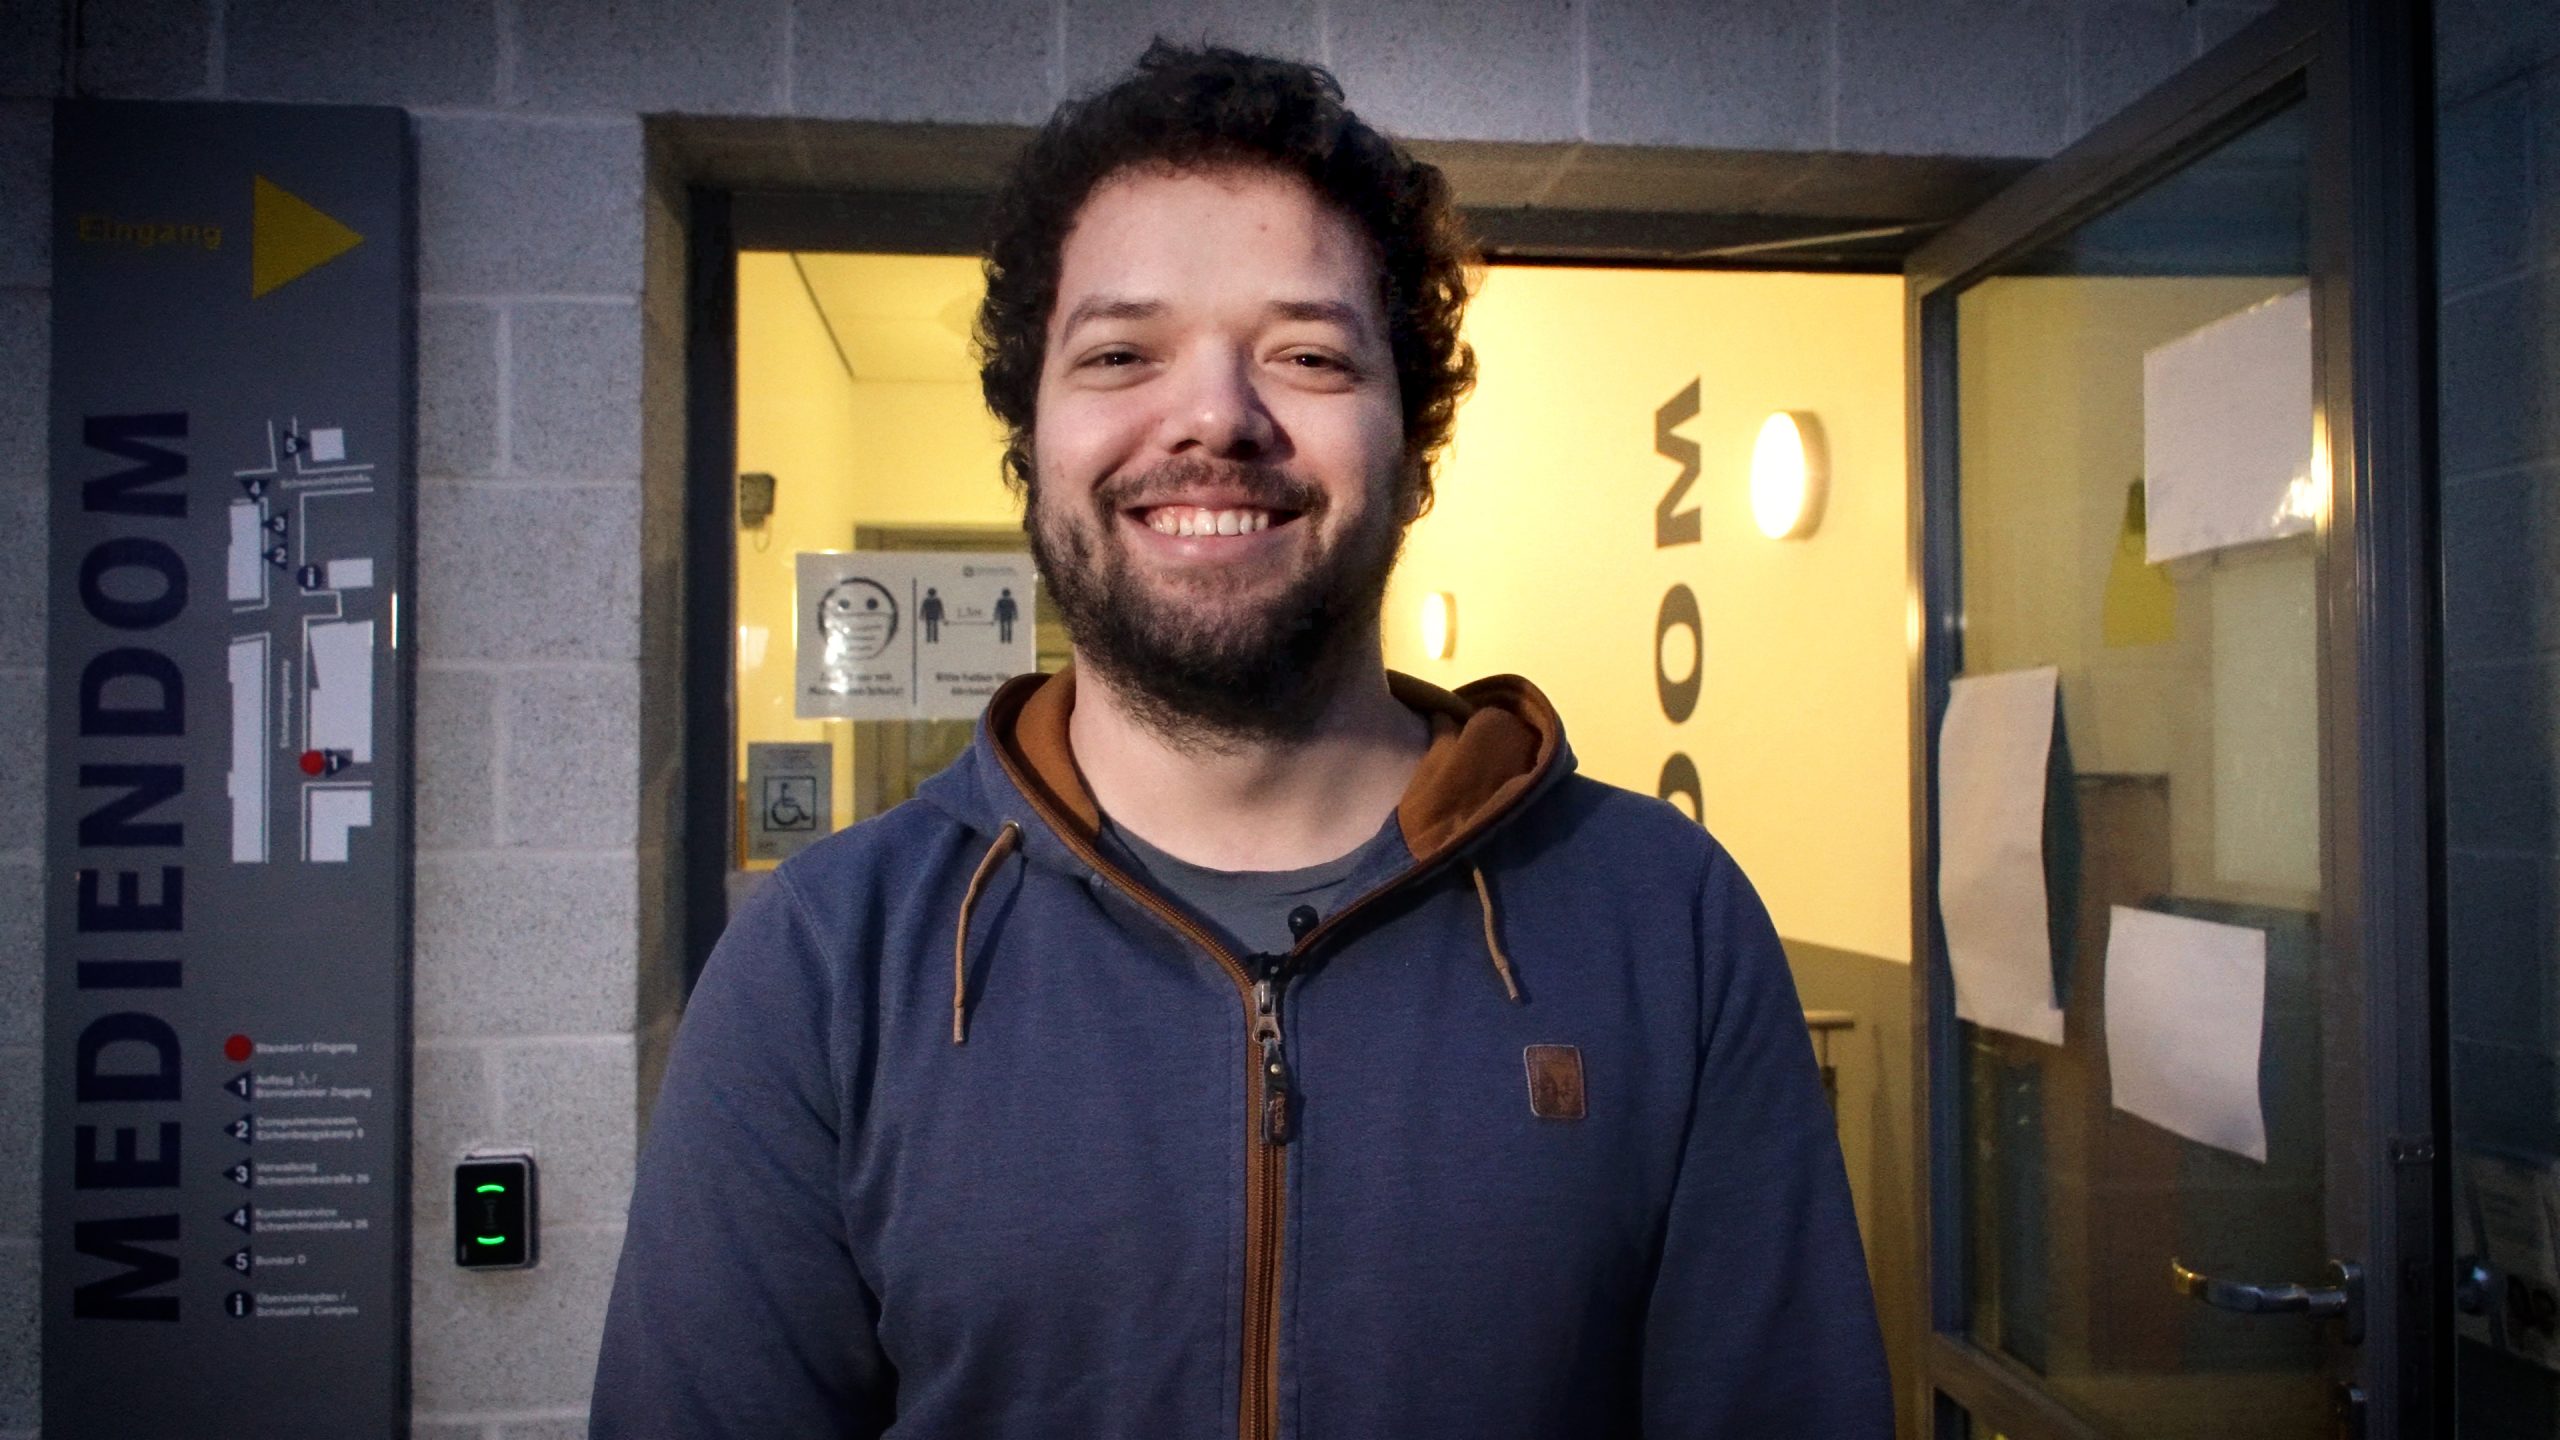 Lächelnder Mann mit dunklem Bart und Haar vor dem Eingang des Mediendoms.